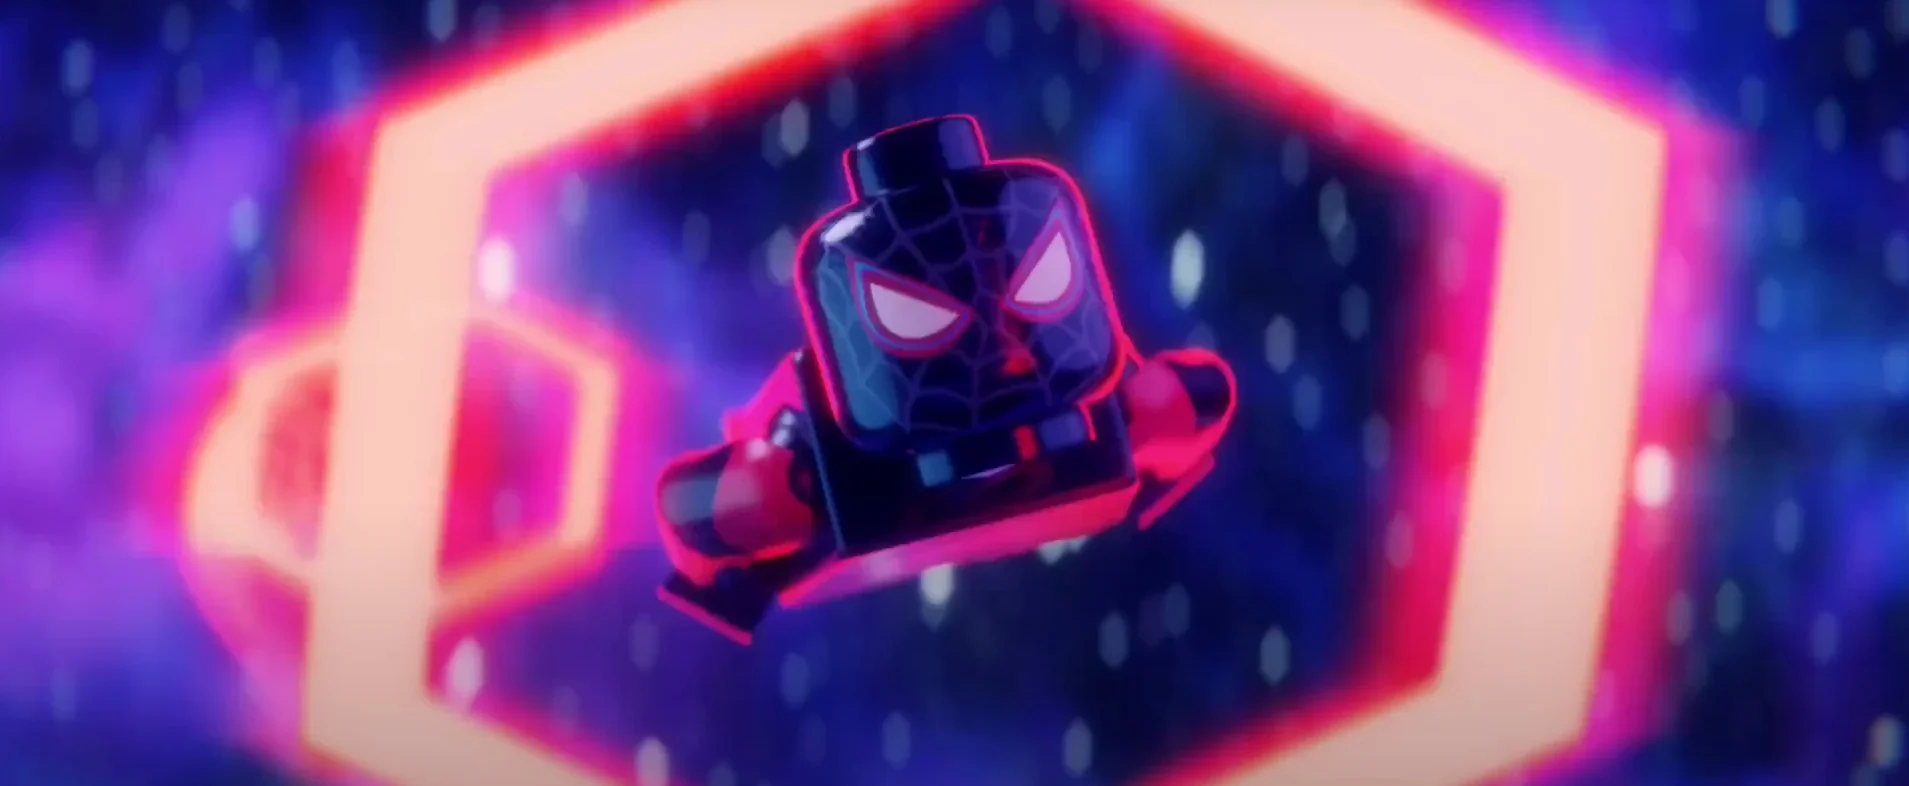 Фанат сделал зрелищный трейлер «Человека-паука: Паутина вселенных» в стиле LEGO - изображение 1